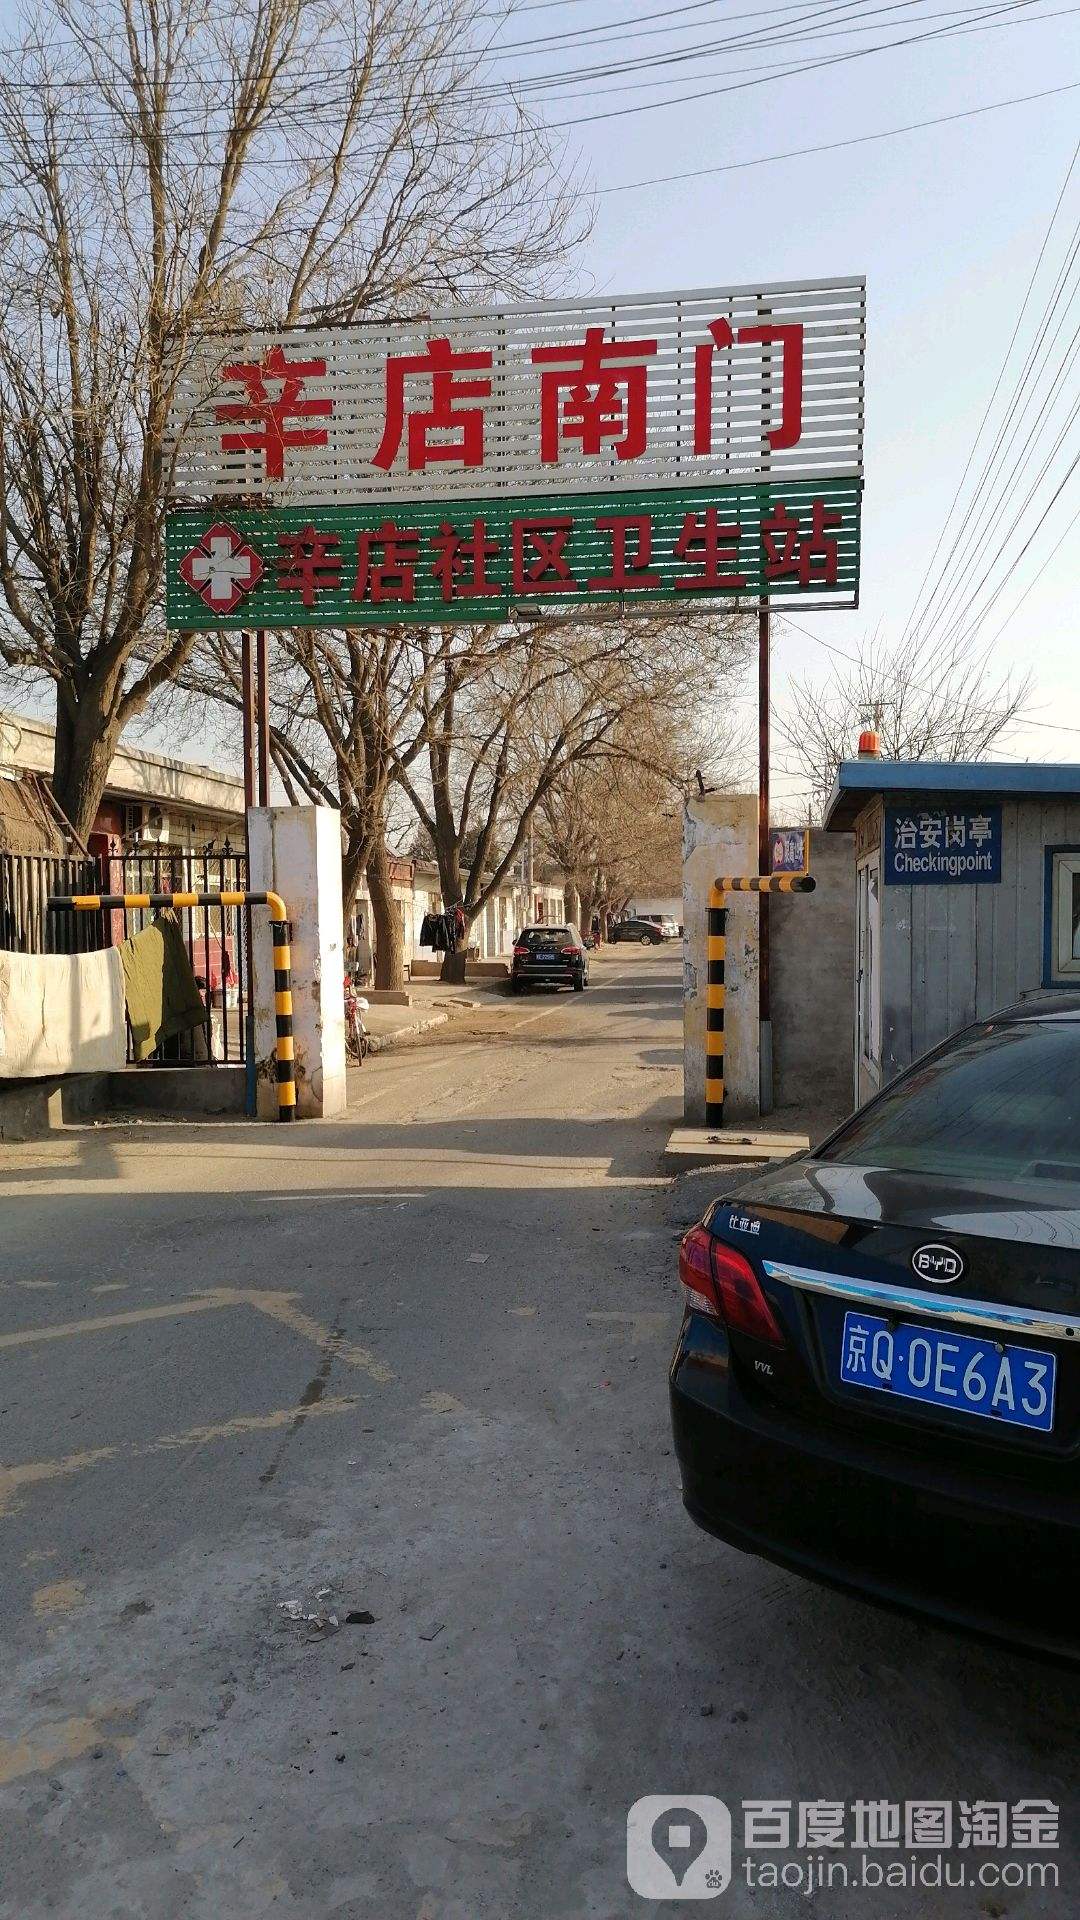 包含北京市大兴区人民医院黄牛票贩子挂号号贩子联系电话的词条